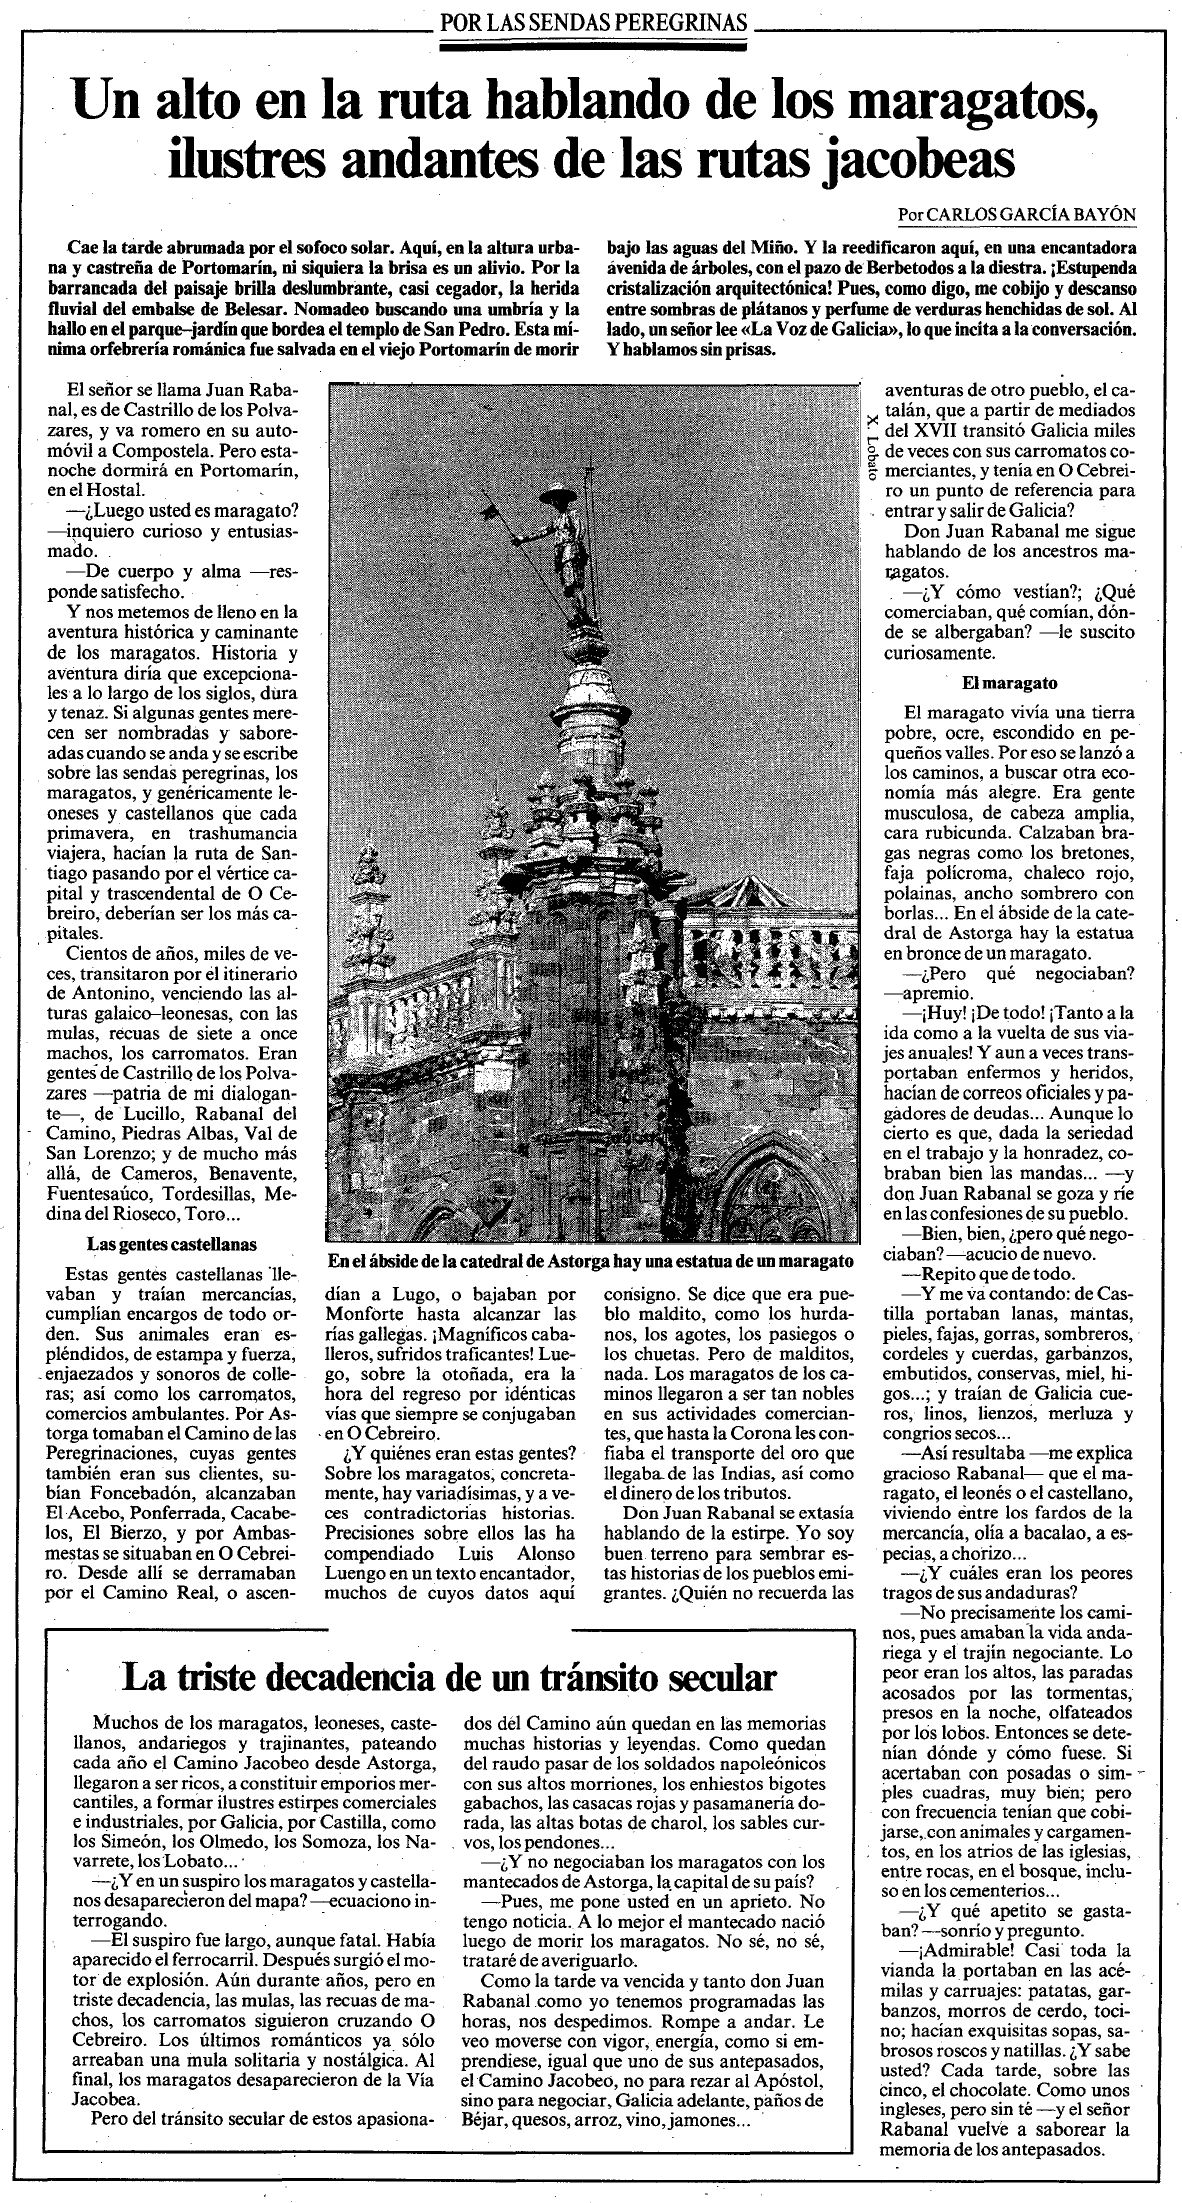 La Voz de Galicia, 24/09/1991